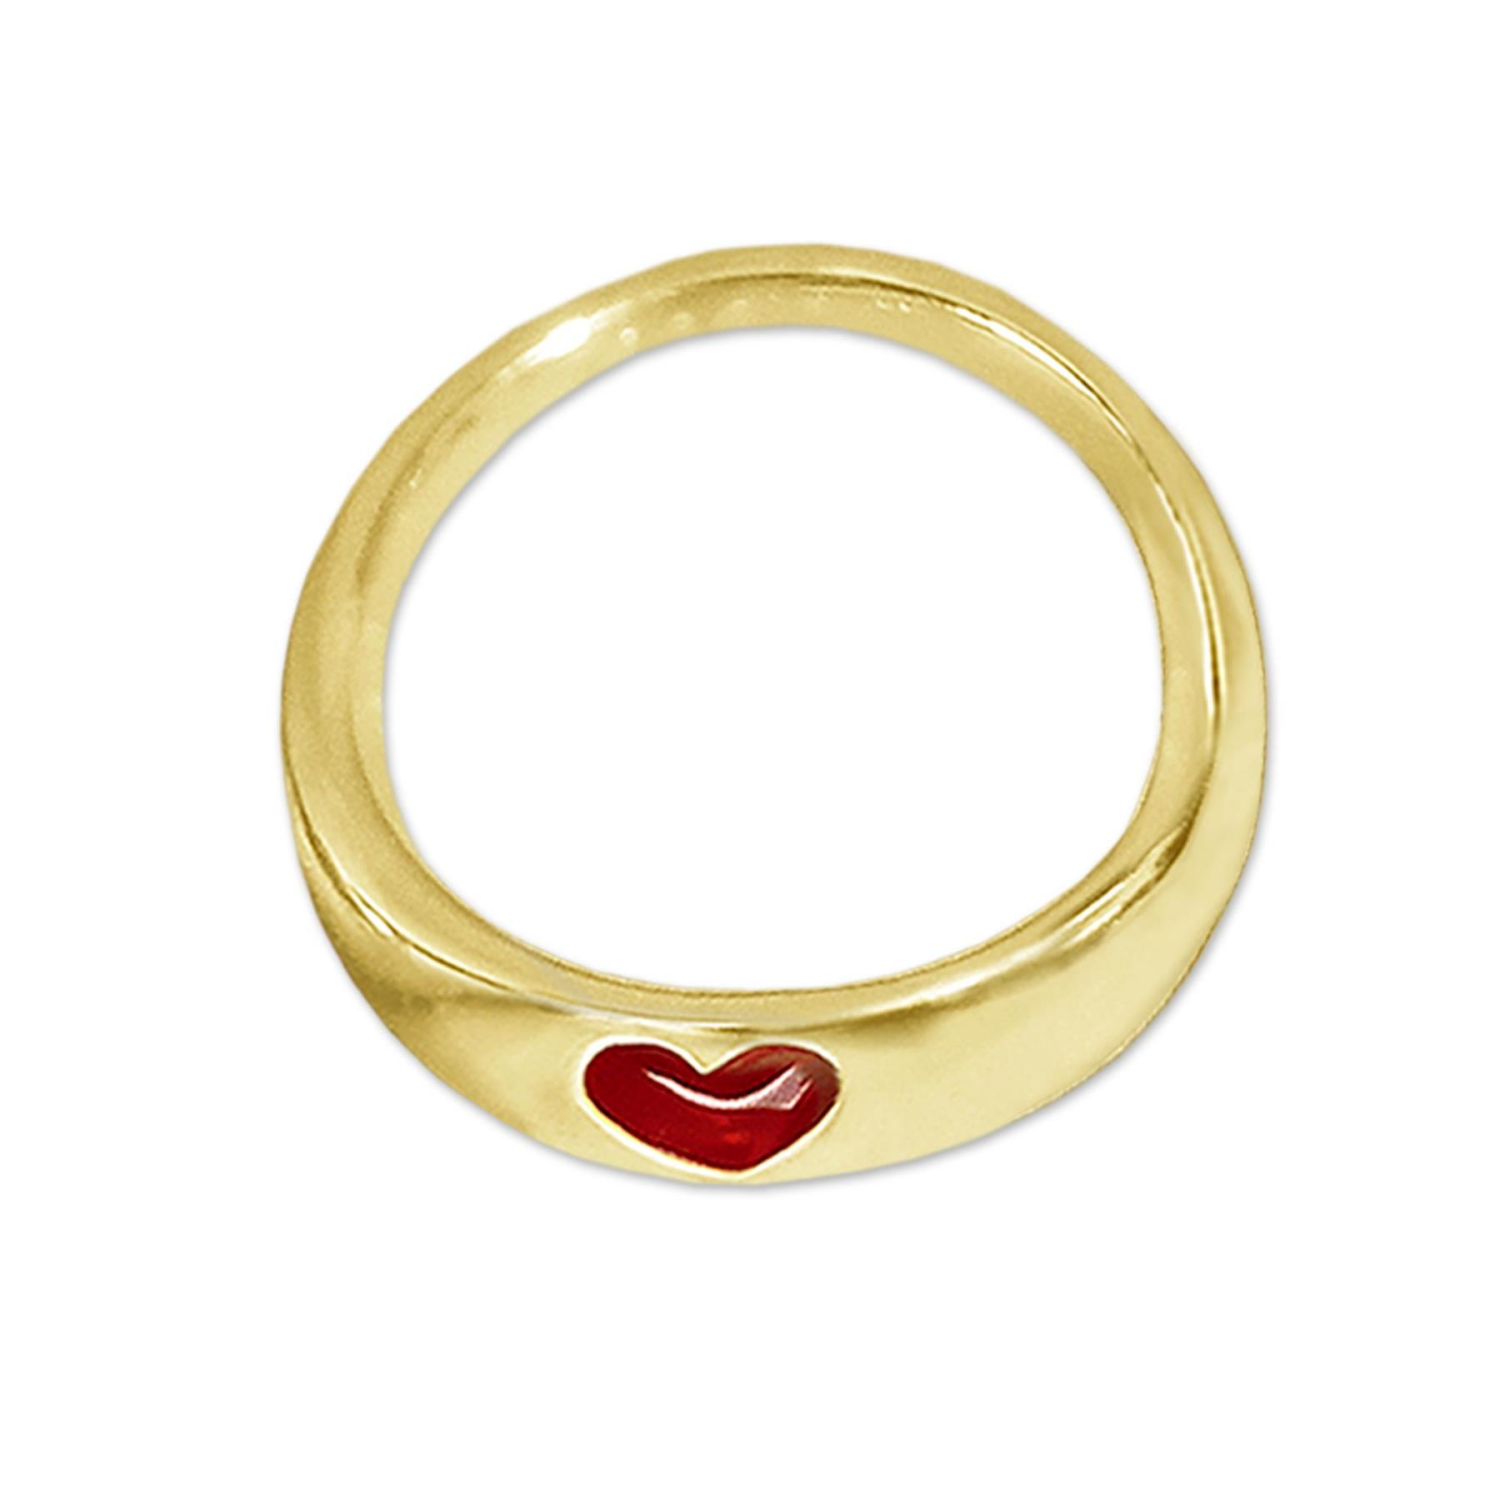 Goldener kleiner Anhänger Mini Taufring Ø 9 mm schmale flache Form mit Herz rot emailliert glänzend 333 GOLD 8 KARAT